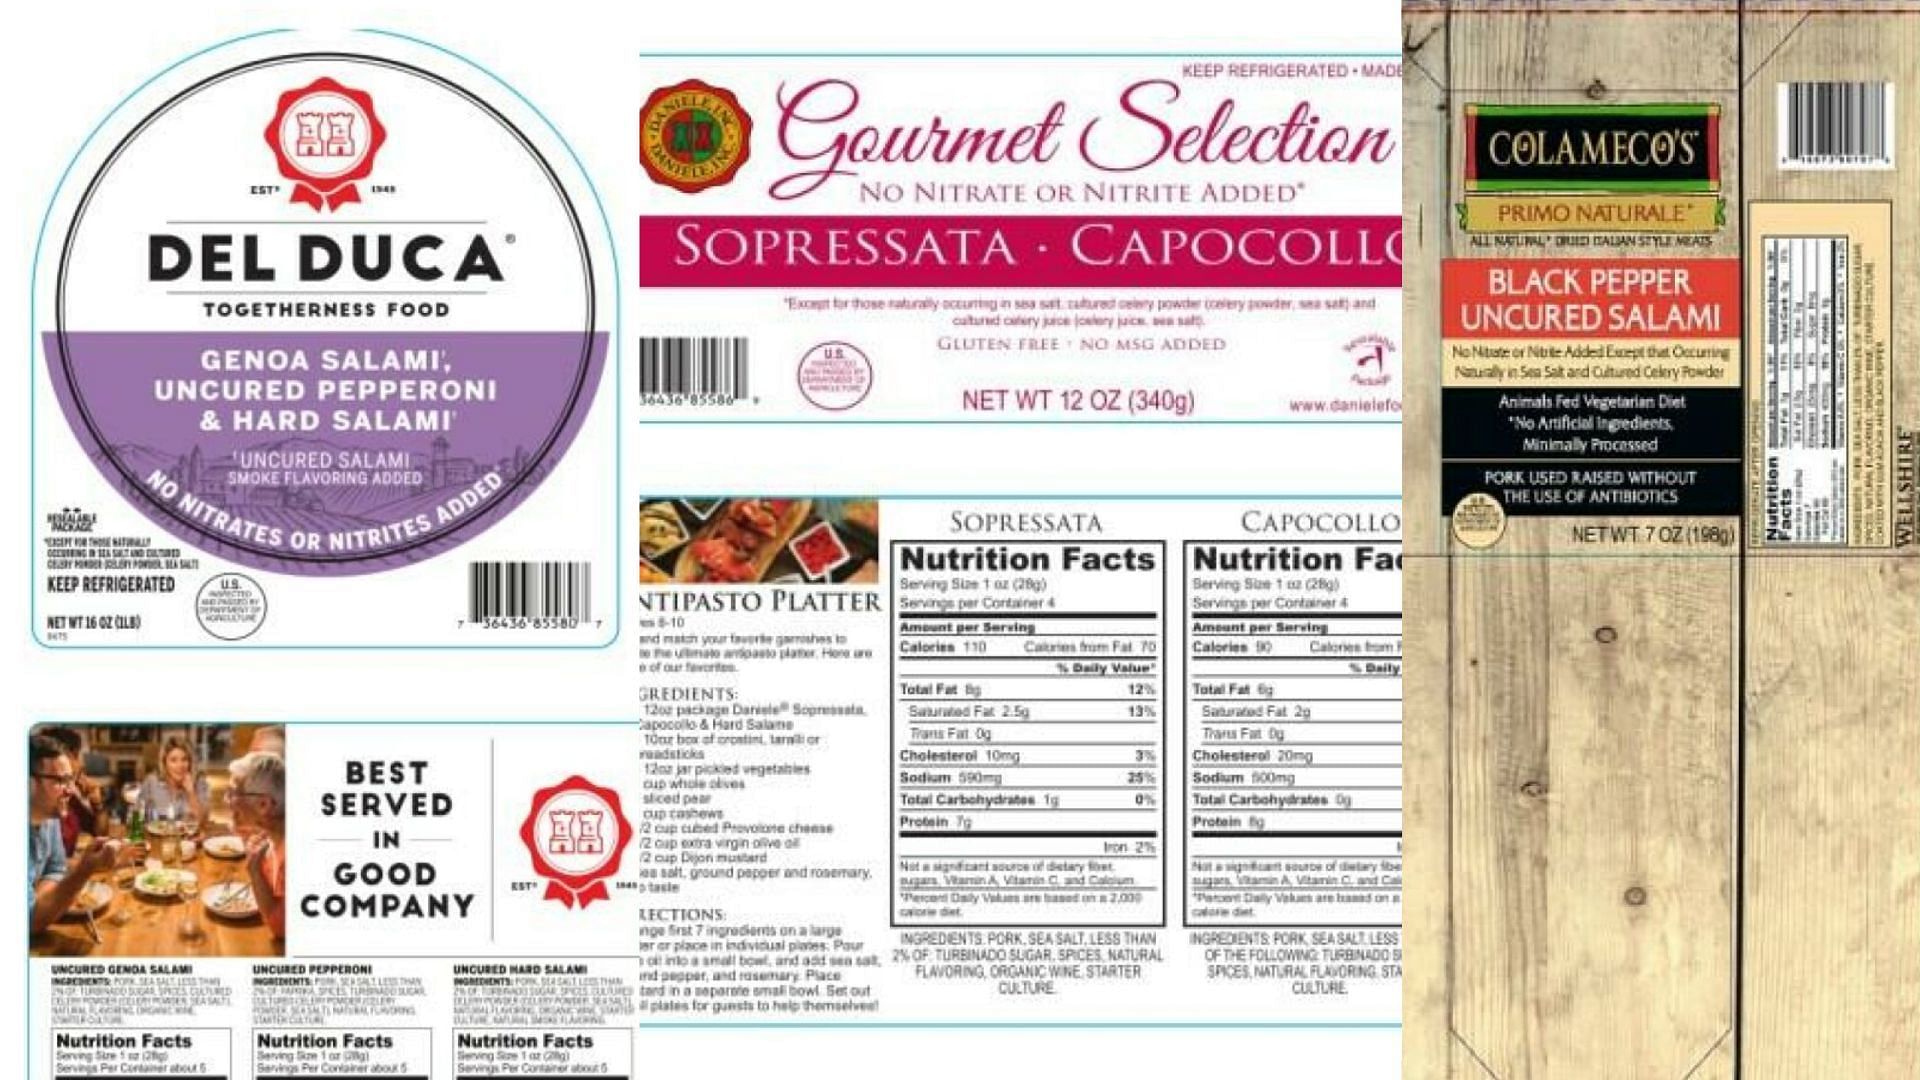 Del EL Duca&#039;s Sopressata, Gourmet Selection Sopressata, Prosciutto &amp; Coppa and Salami, and Colameco&#039;s Primo Naturale Black Pepper Uncured Salami (Image via FSIS)